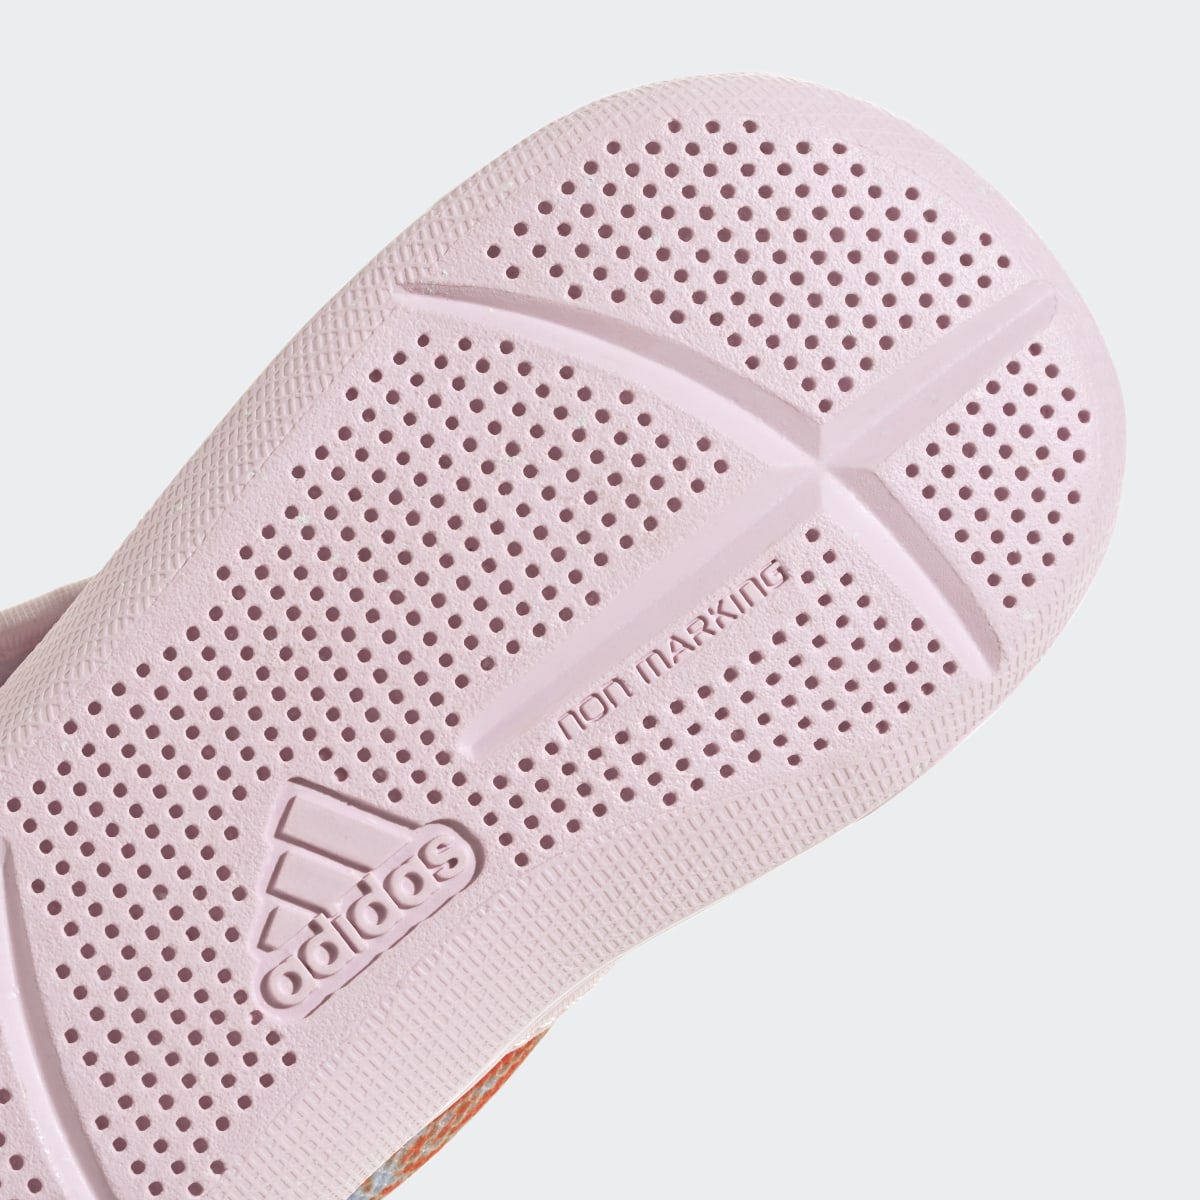 Adidas Sandálias de Natação AltaVenture 2.0 Vaiana adidas x Disney. 10